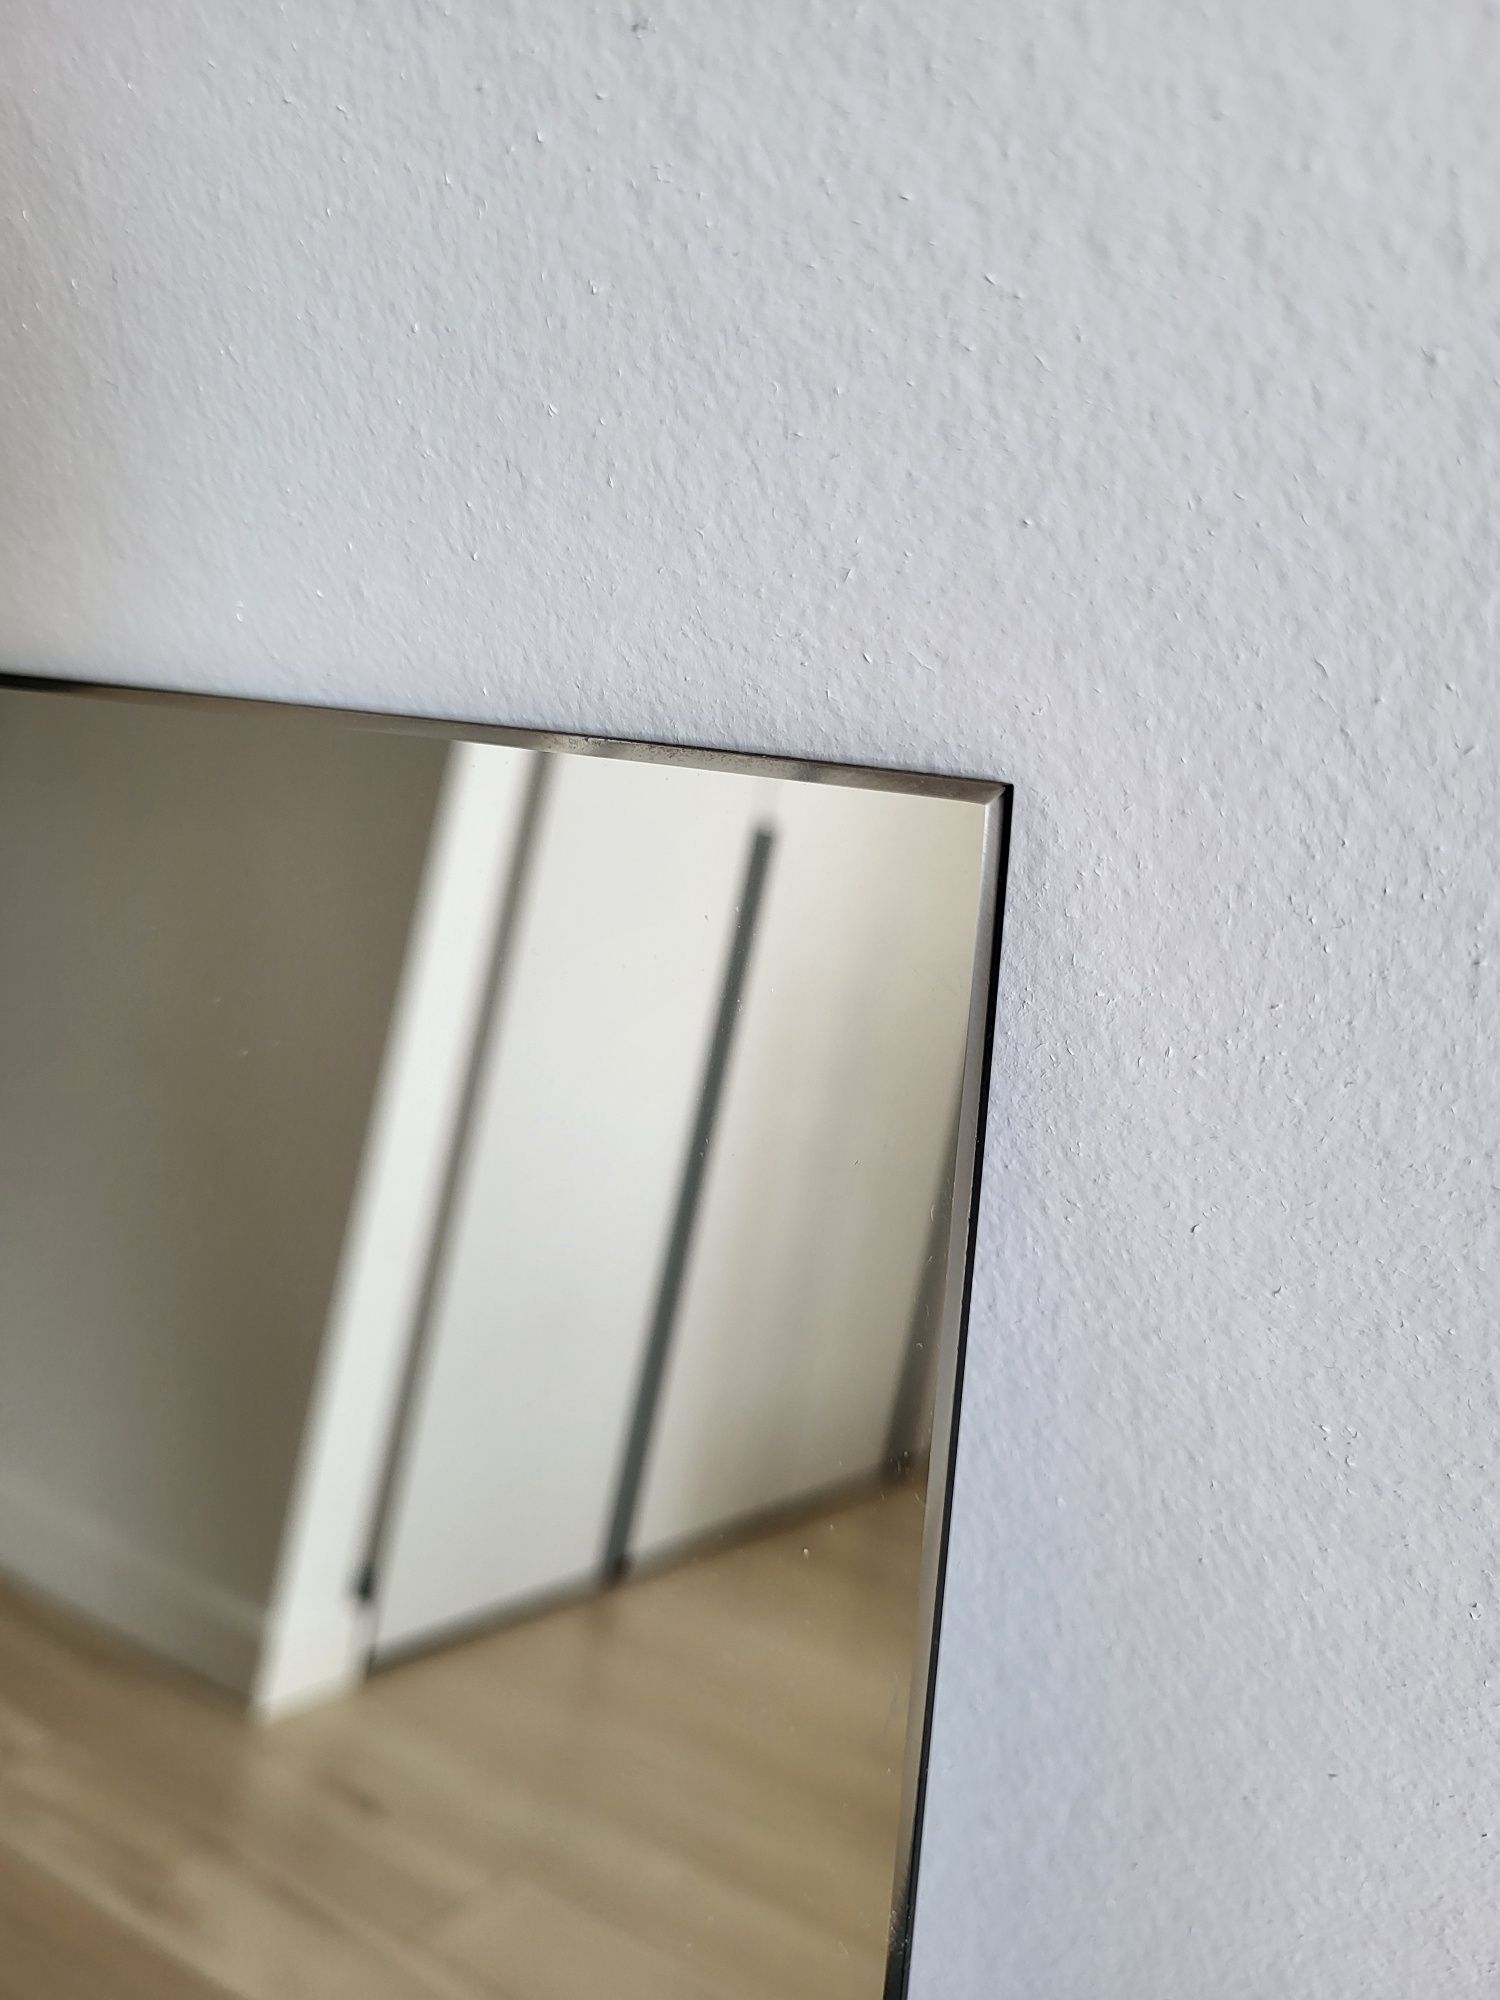 Зеркало для санузла, ванной комнаты 50×80 см